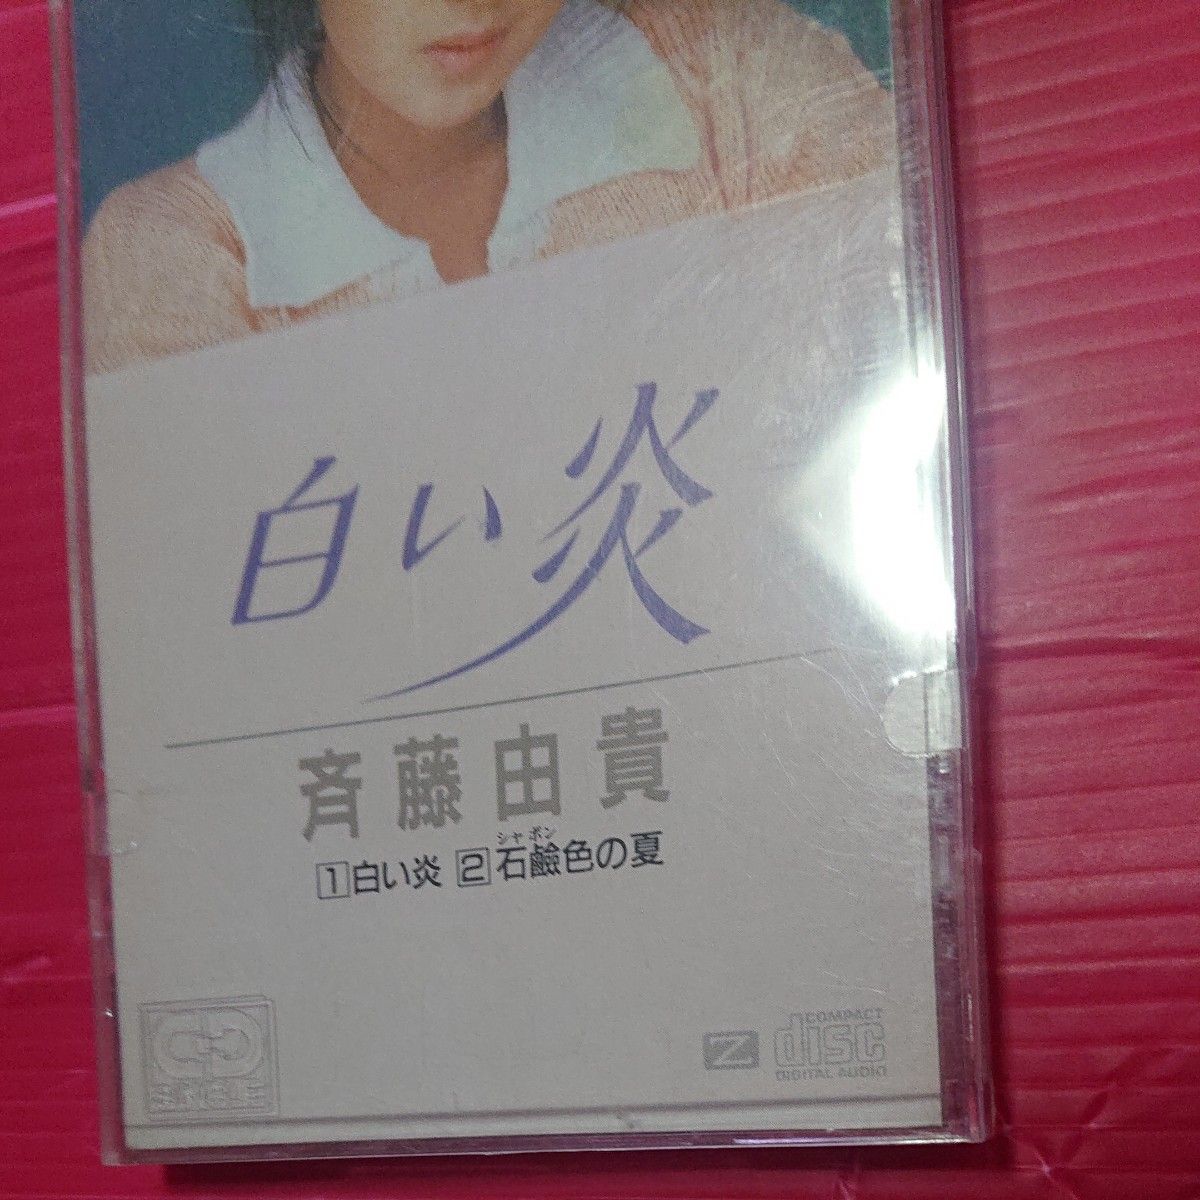 斉藤由貴 /白い炎 CD シングル 8センチ 8cm 作曲者 玉置浩二